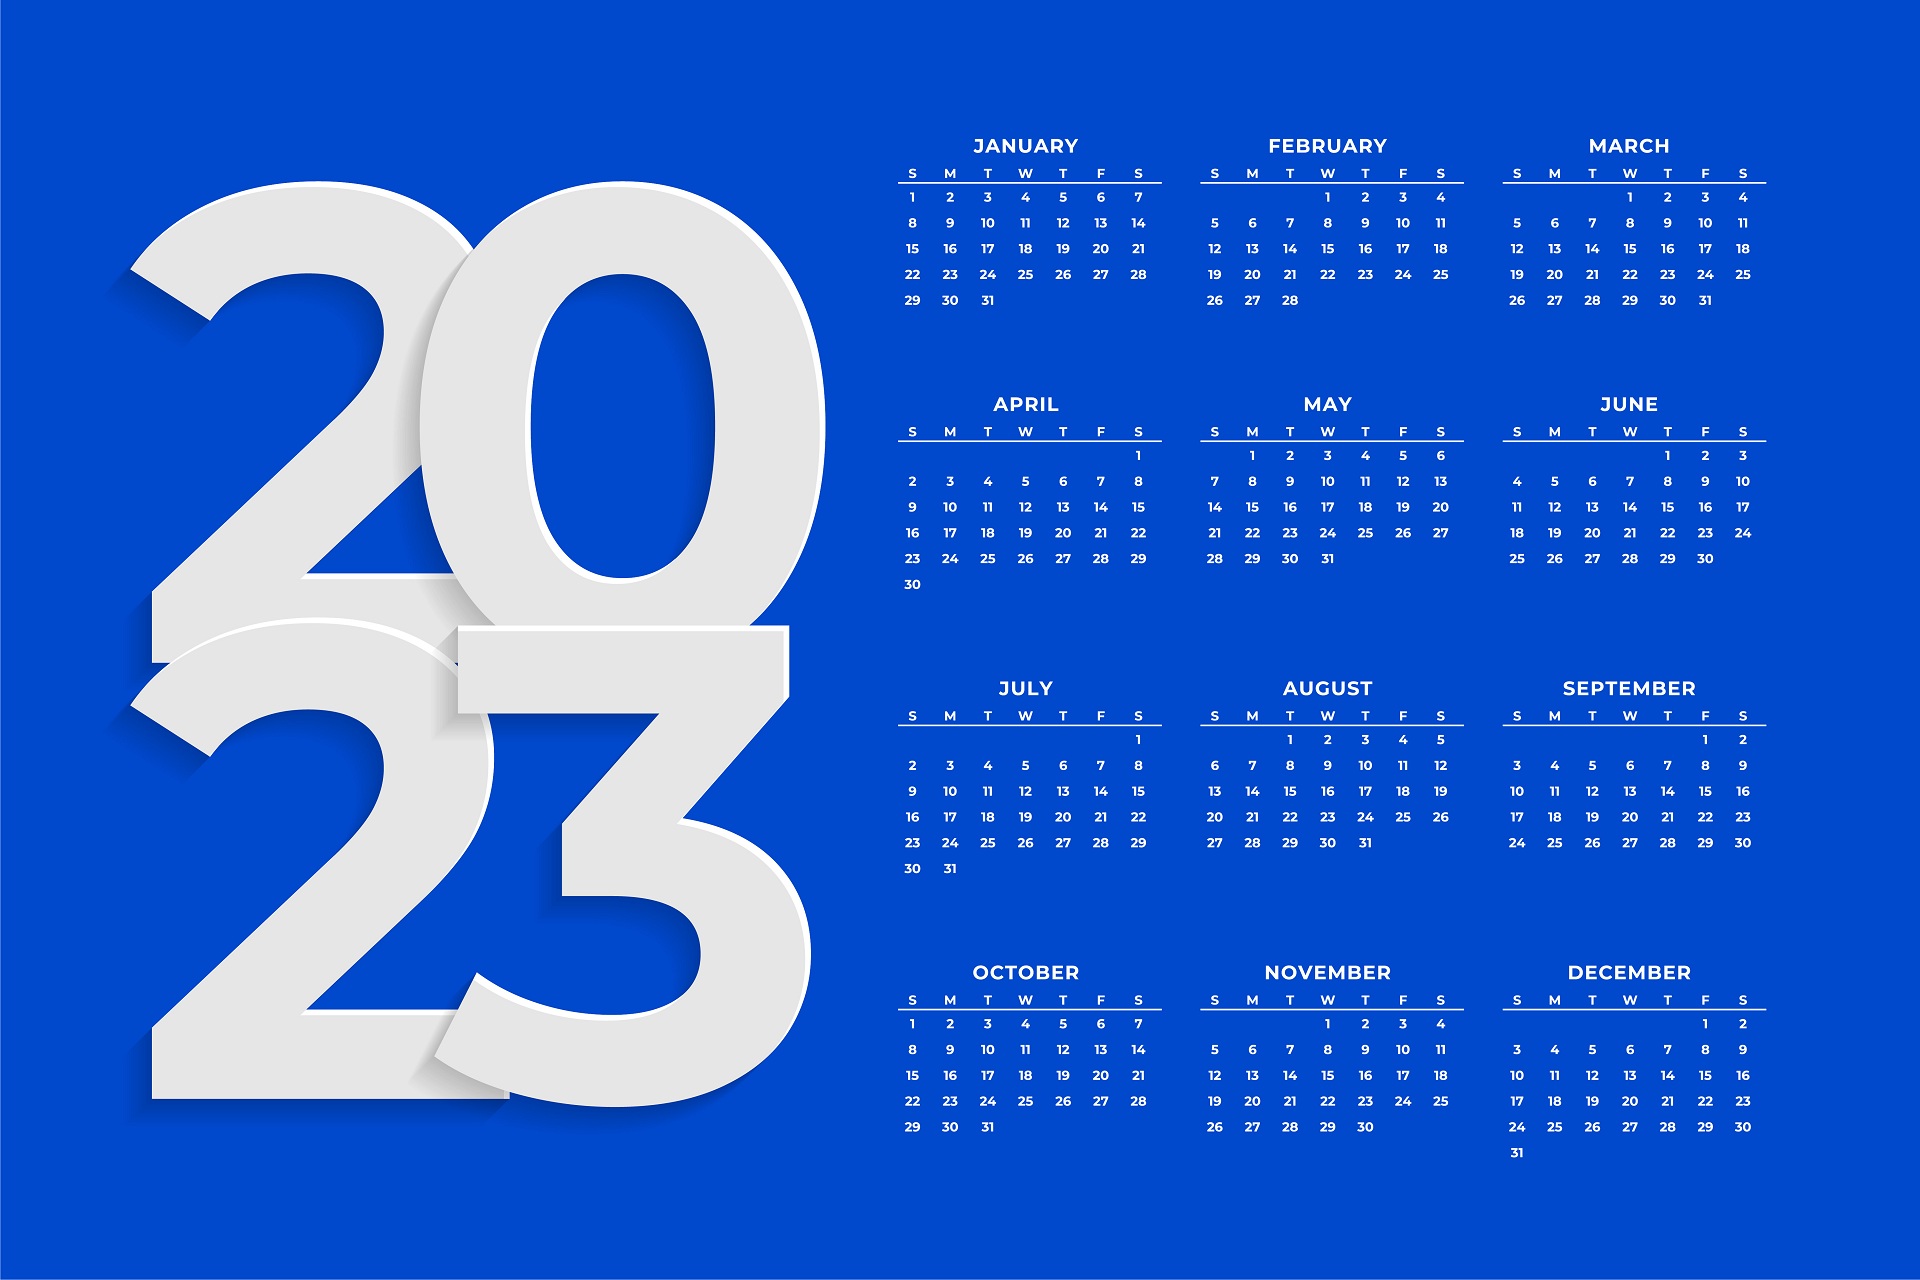 Calendar 2023 Desktop Wallpapers • TrumpWallpapers